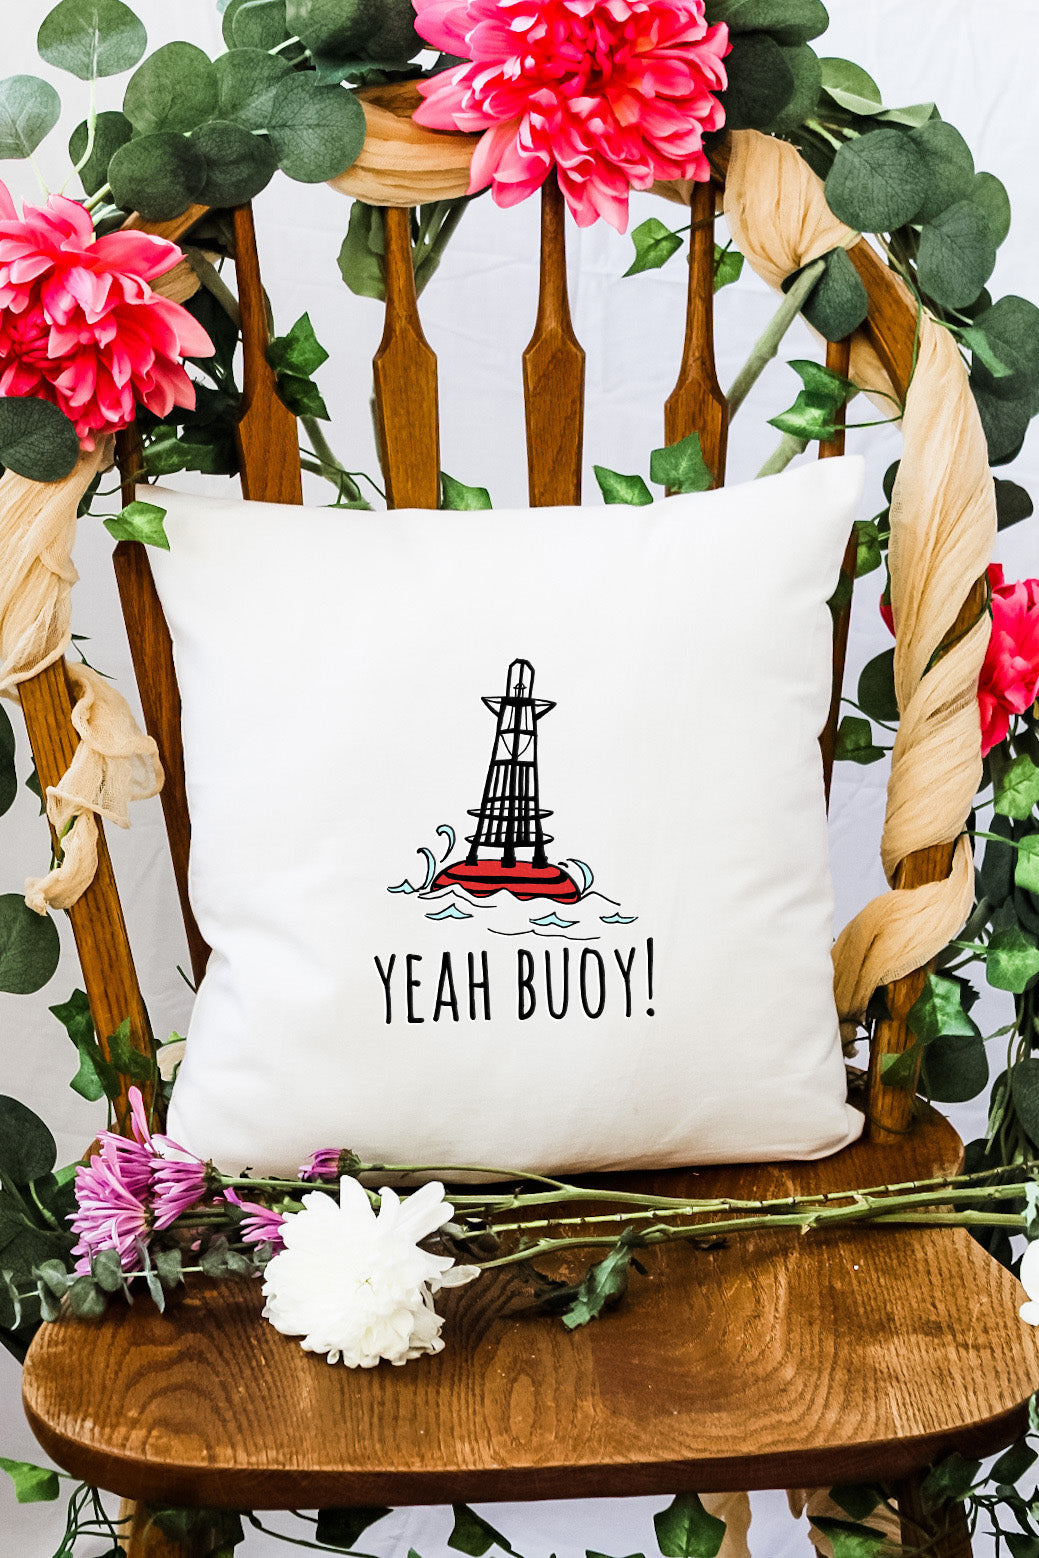 Yeah Buoy! - Decorative Throw Pillow - MoonlightMakers